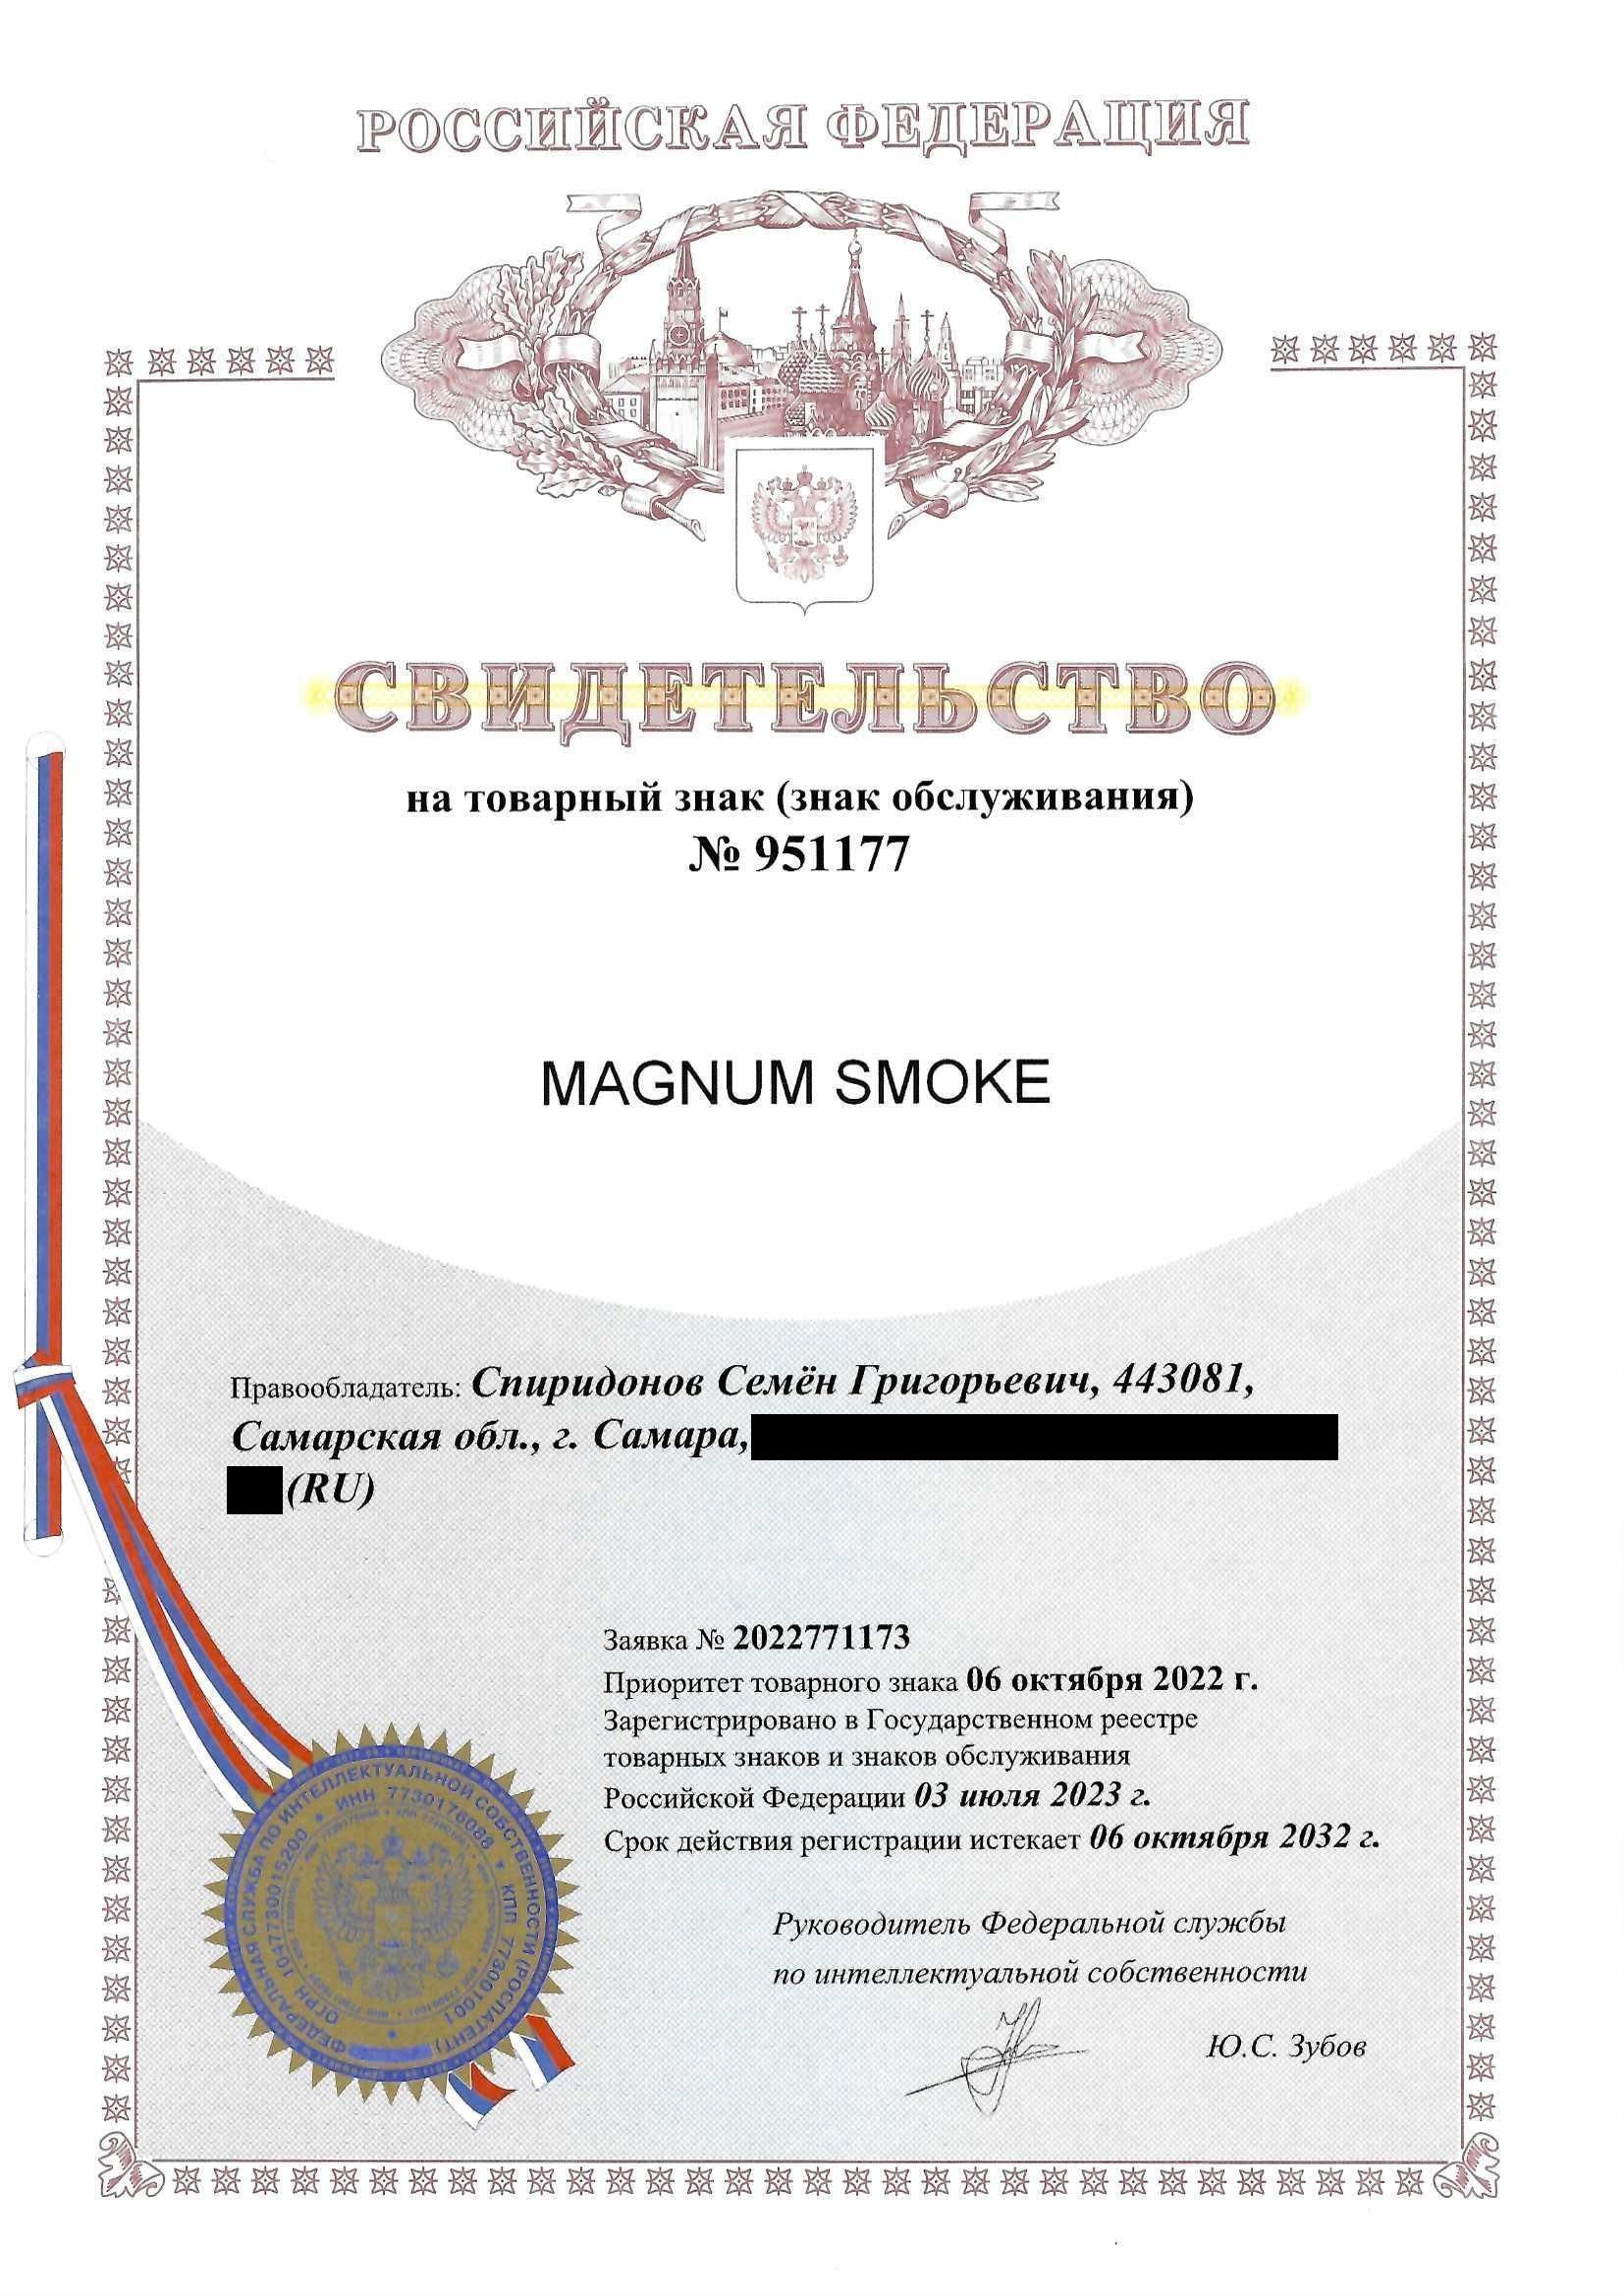 Товарный знак № 951177 – Magnum Smoke